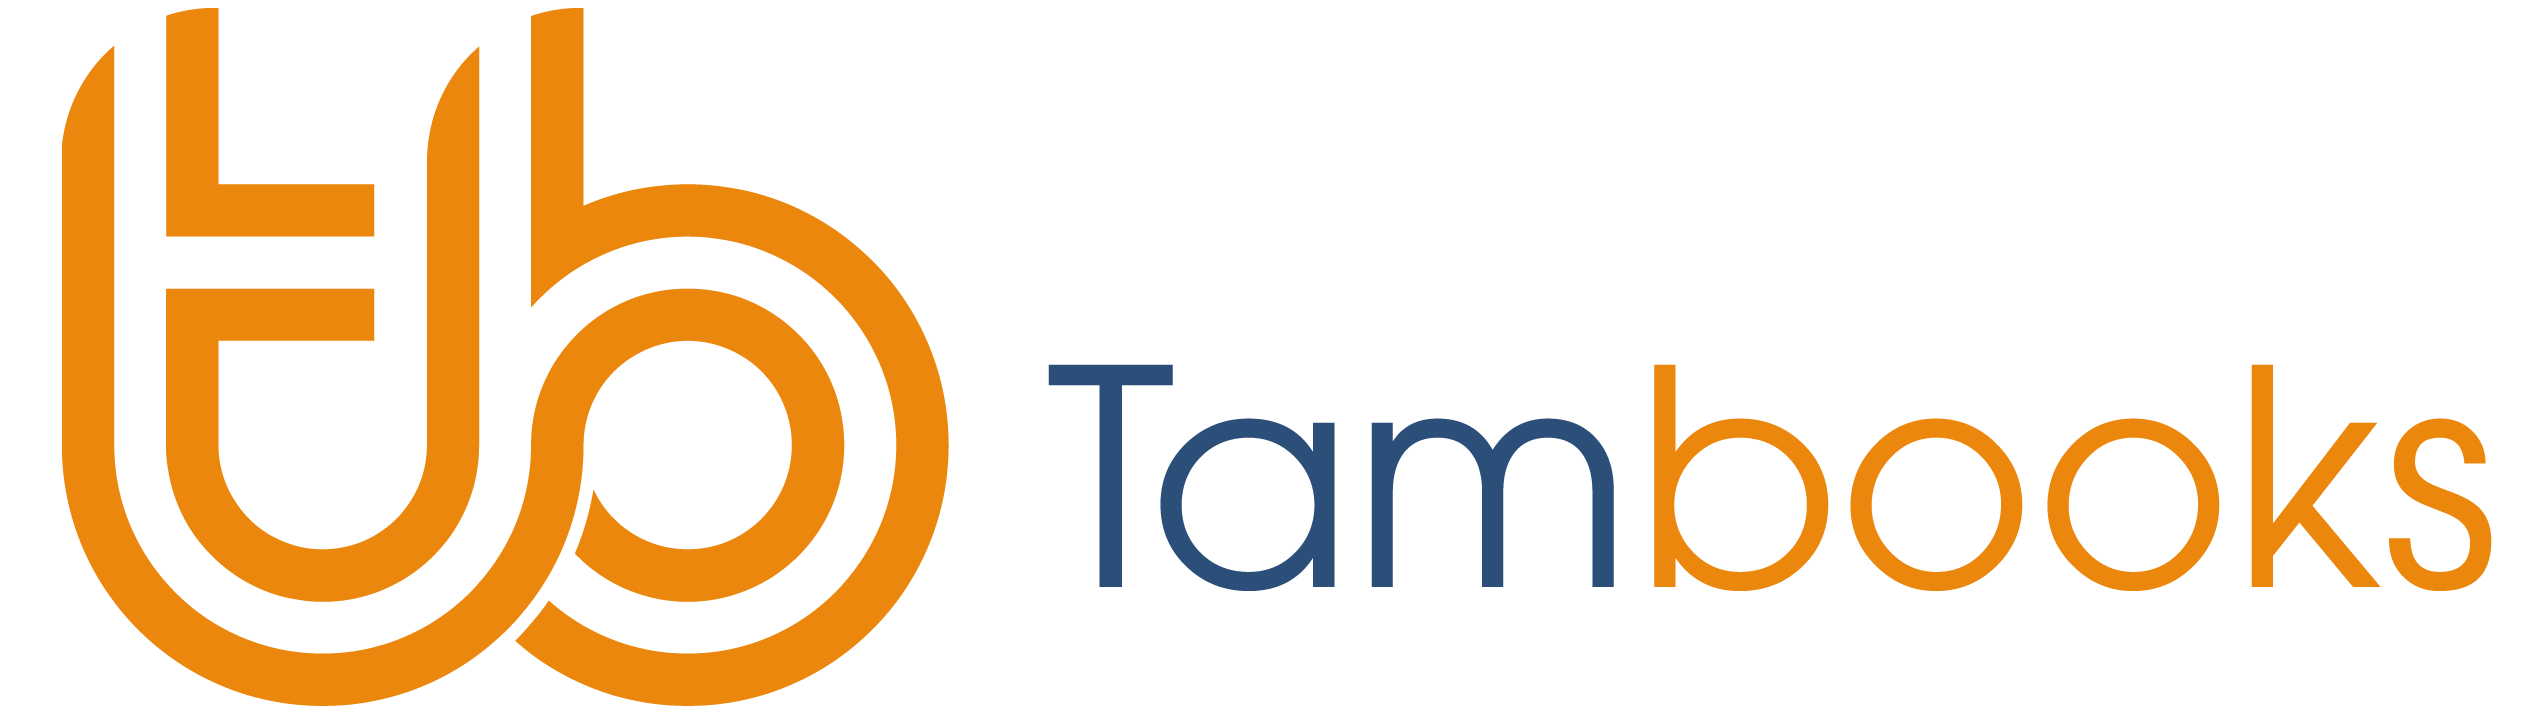 Tambooks